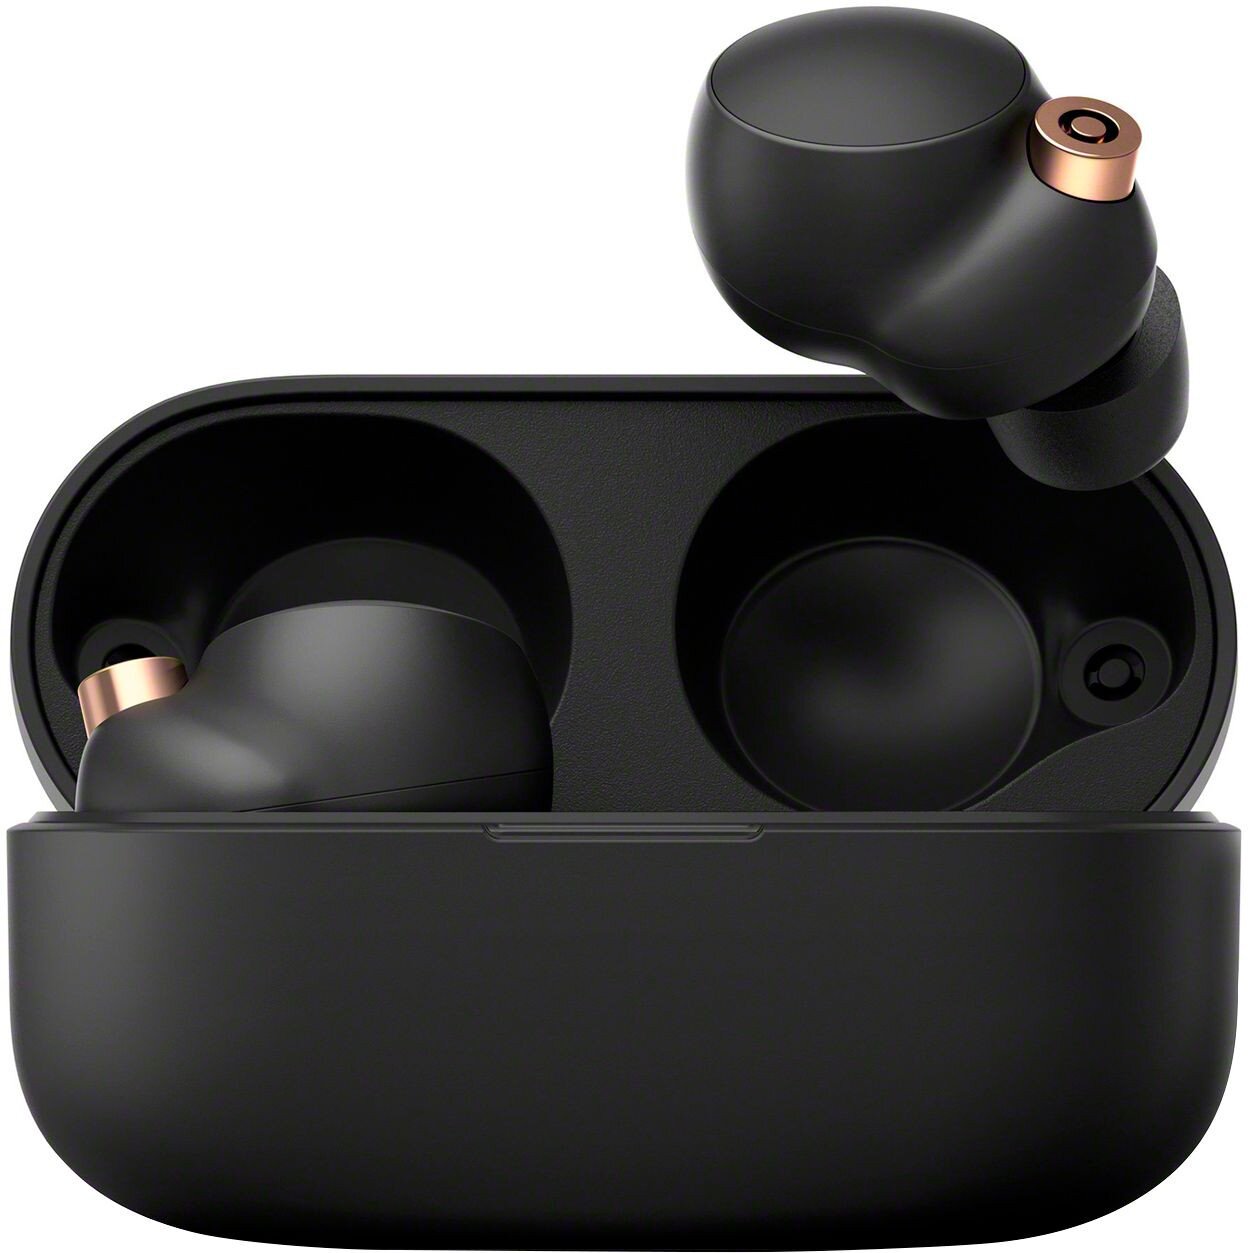 Buy Sony WF-1000XM4 Wireless Noise Cancelling In-Ear Headphones - Black